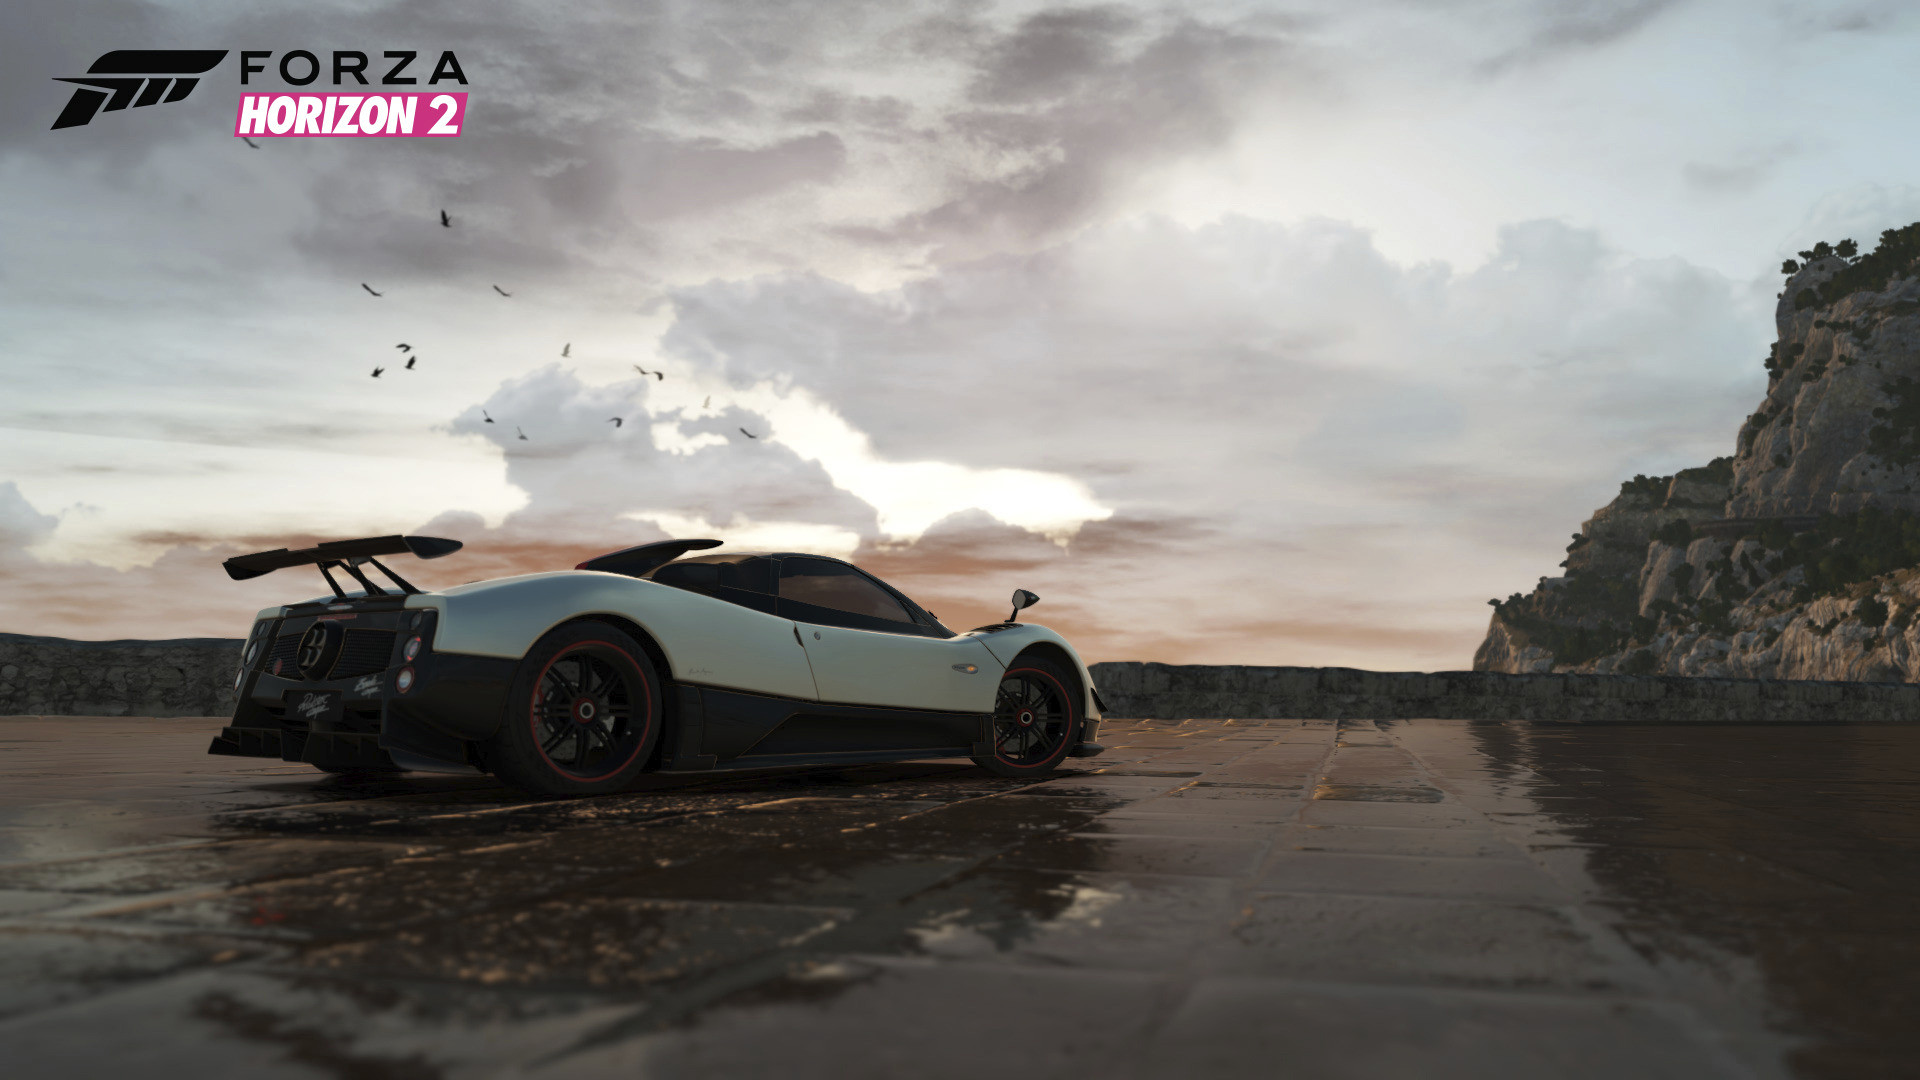 Con el lanzamiento de Forza Horizon 2 podremos disfrutar de ocho nuevos coches de manera gratuita